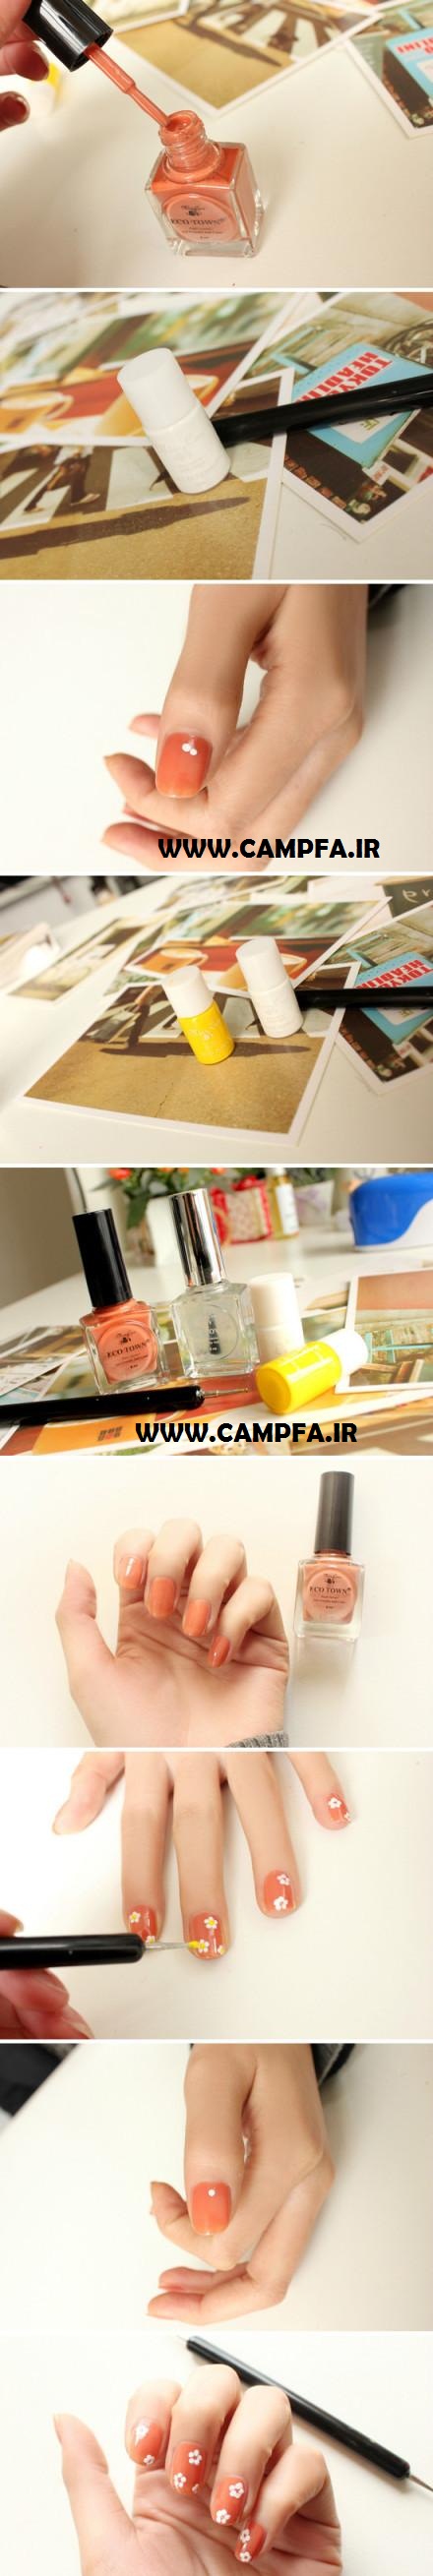 آموزش تصویری 10 مدل لاک ناخن جدید www.campfa.ir